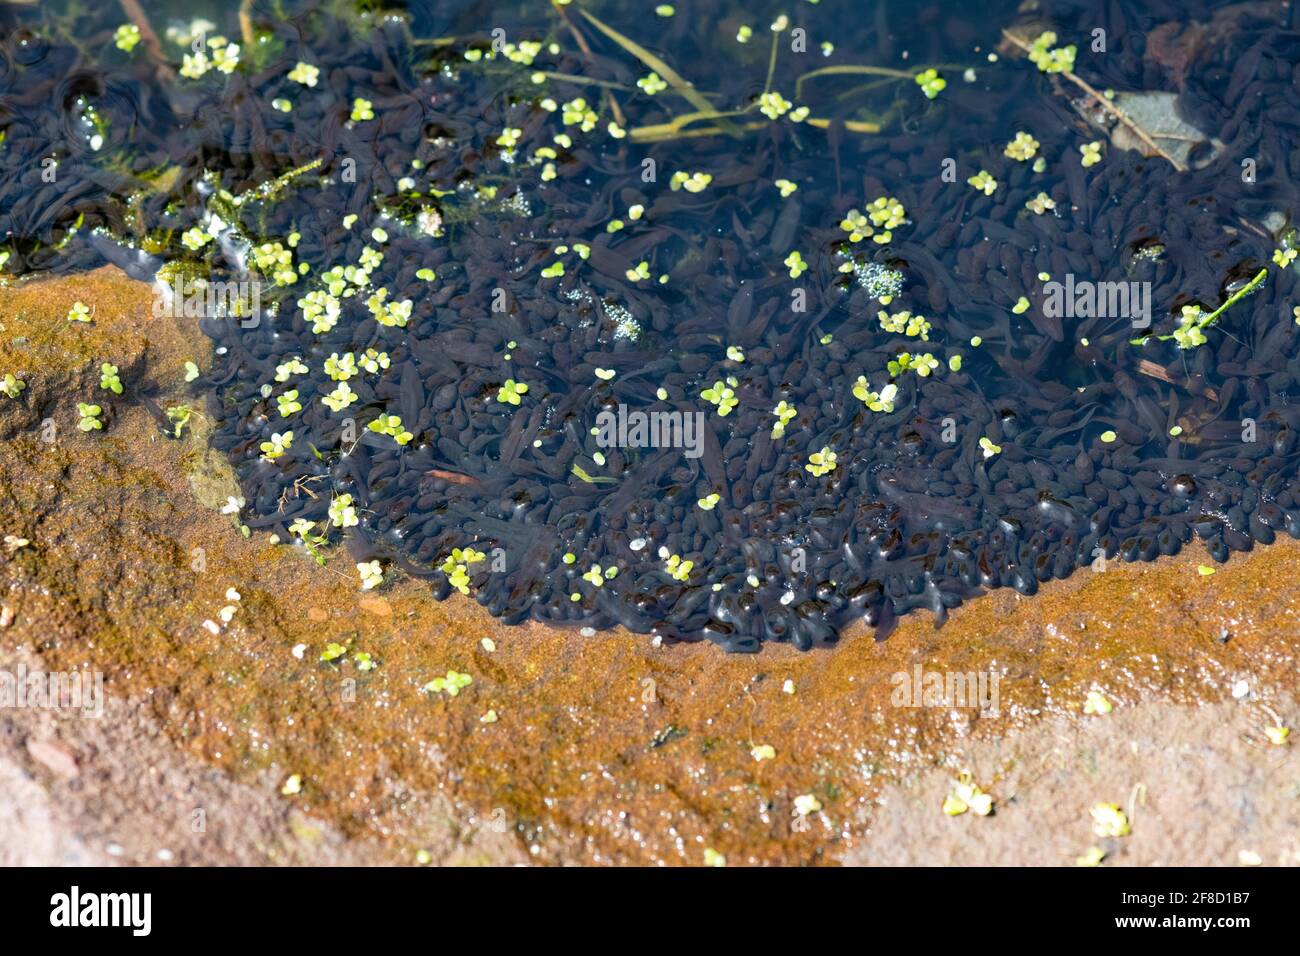 Junge Kaulquappen (gemeiner Frosch), die sich in flachem, warmem Wasser am Rand des Teichs - Großbritannien - angesammelt haben Stockfoto